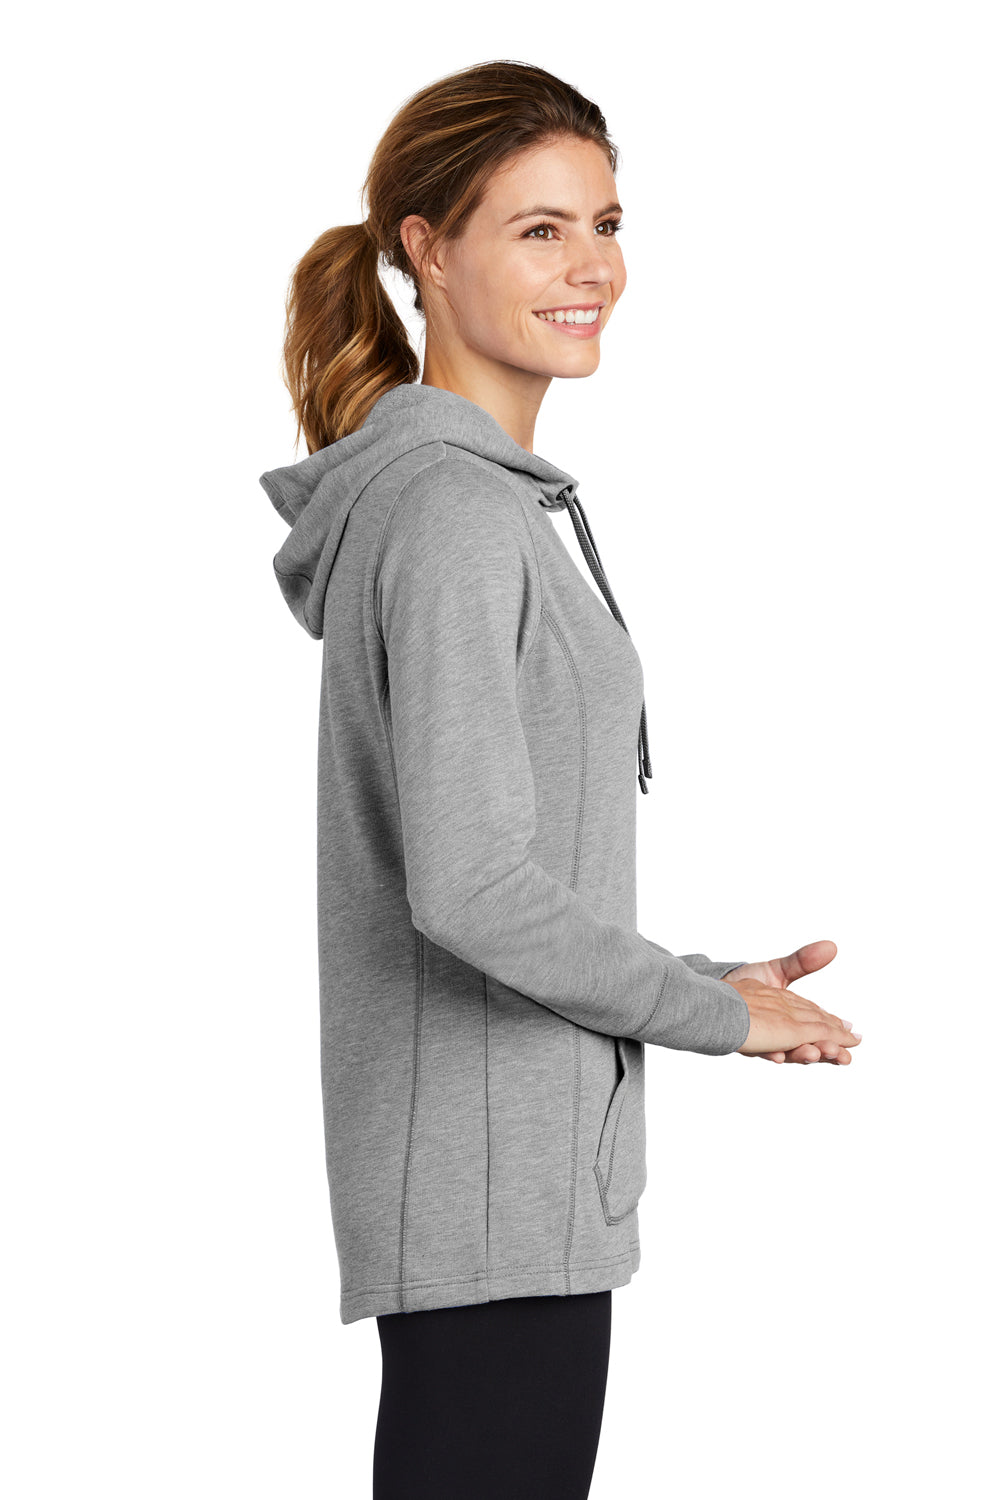 Sport-Tek LST296 Womens Moisture Wicking Fleece Hooded Sweatshirt Hoodie Light Grey Side